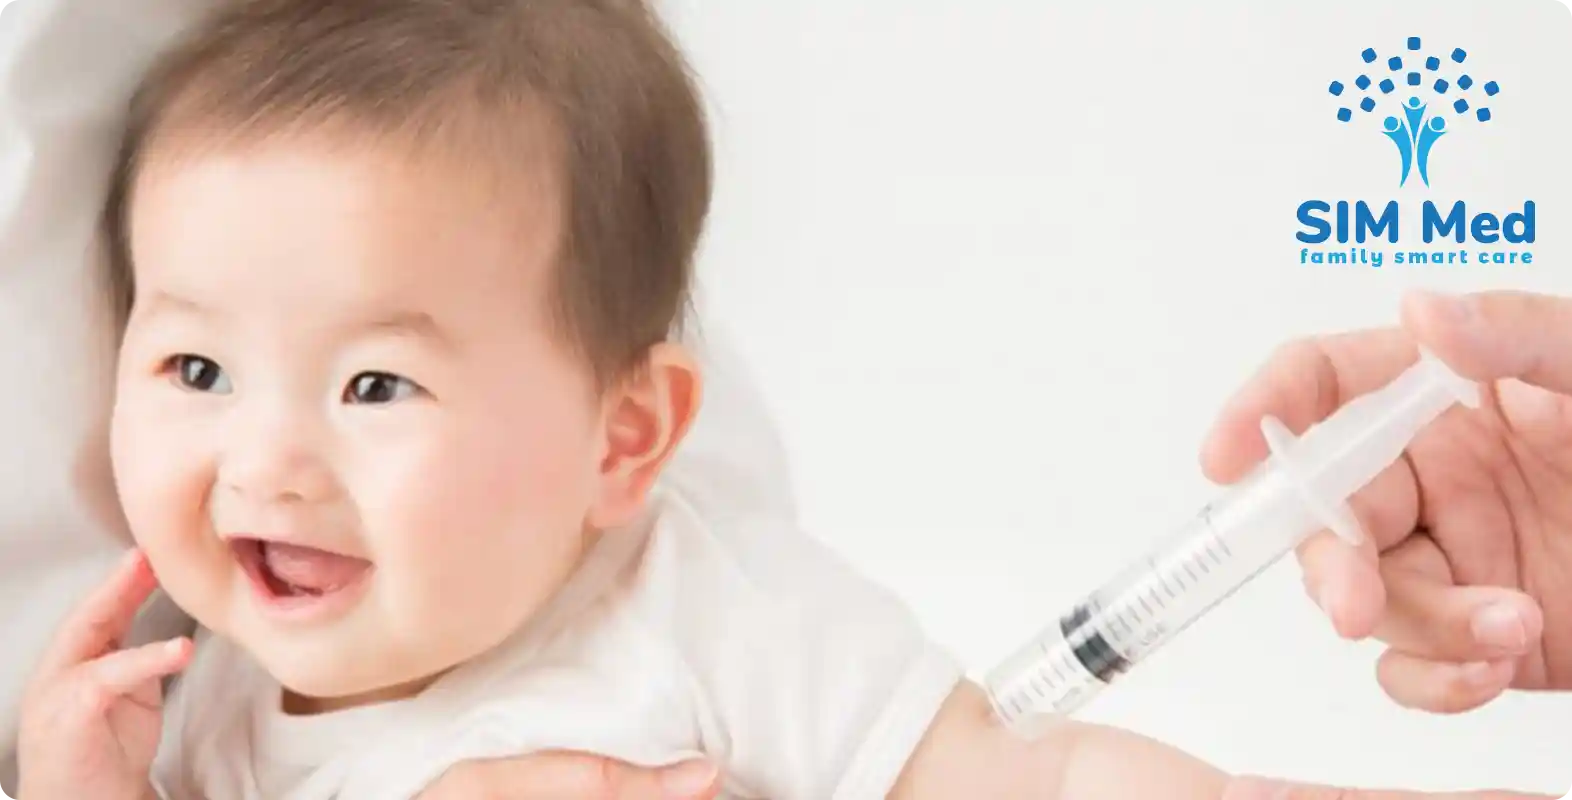 SIM Medical Center cung cấp dịch vụ tiêm chủng với nhiều loại vắc-xin đa dạng cho các đối tượng khác nhau, từ trẻ sơ sinh, trẻ nhỏ, người lớn, phụ nữ trước và trong khi mang thai